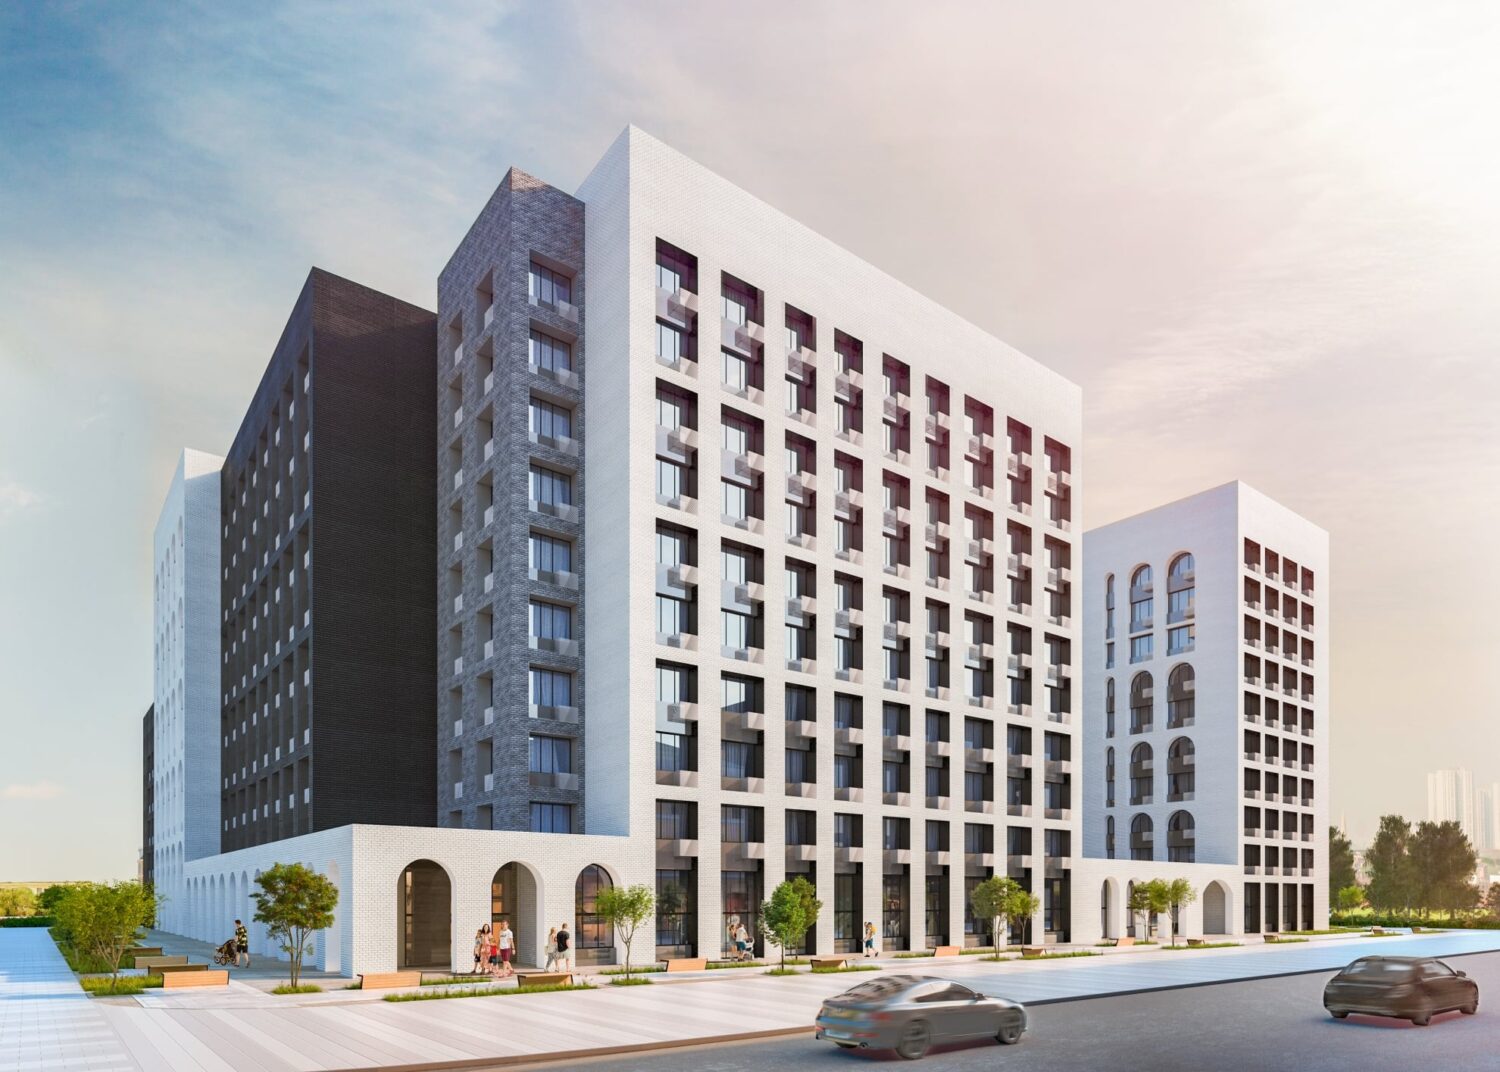 Дом на 274 квартиры по реновации введут в Басманном районе в 2022 году